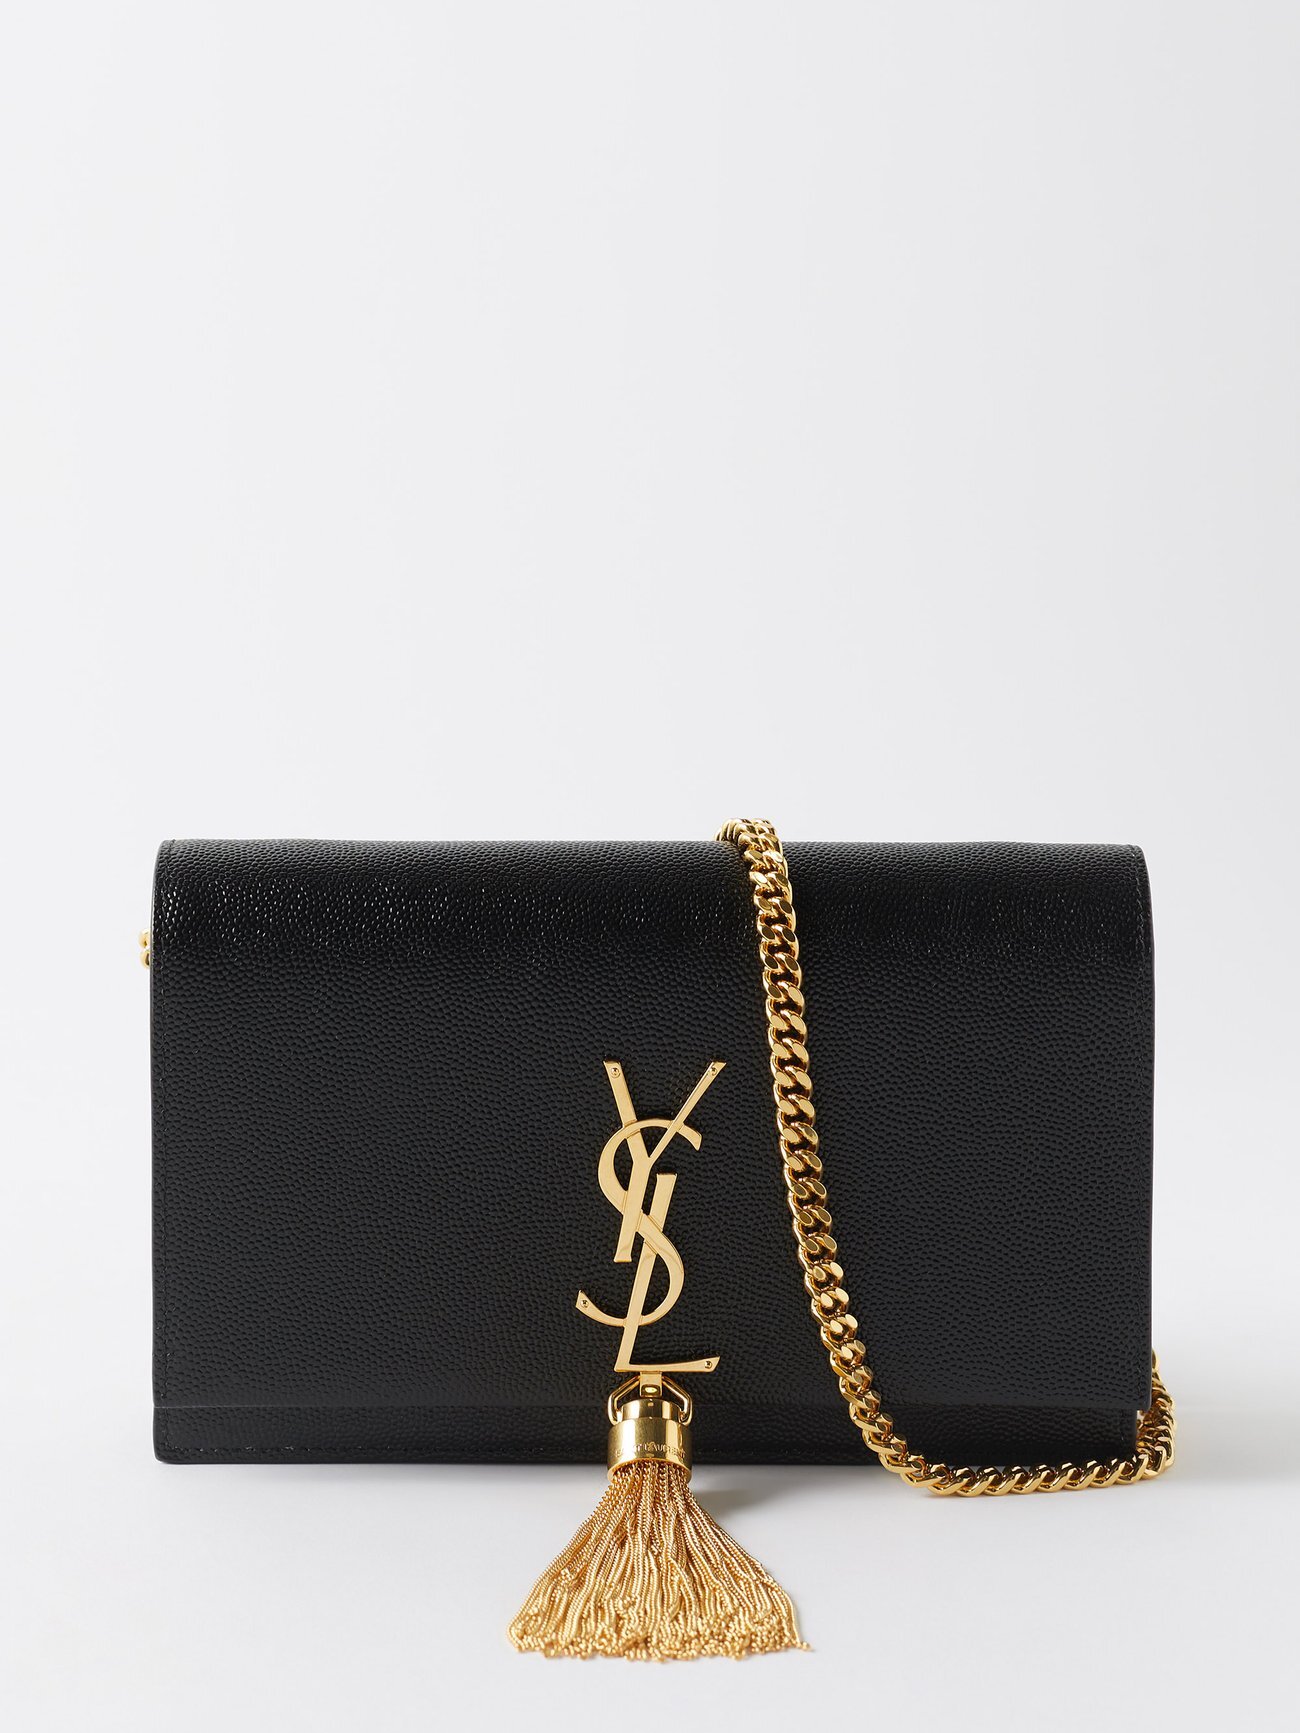 Saint Laurent - Kate Chain-tassel Leather Cross-body Bag - Womens - Black